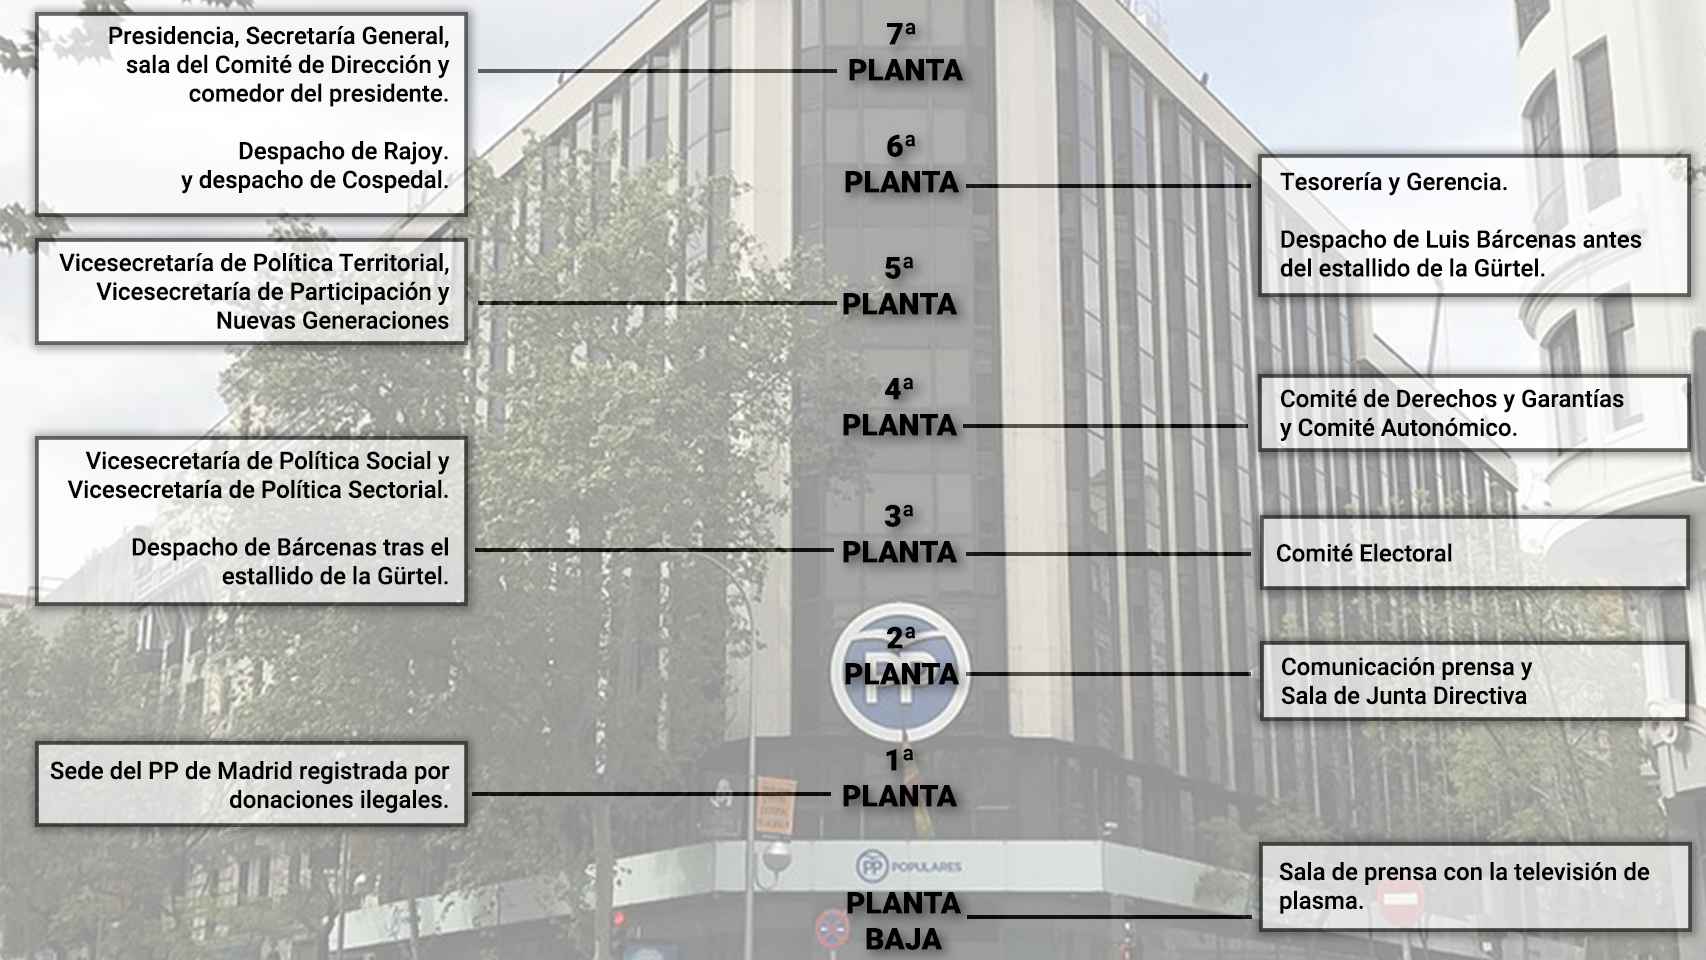 Estructura de la sede nacional del Partido Popular por plantas.